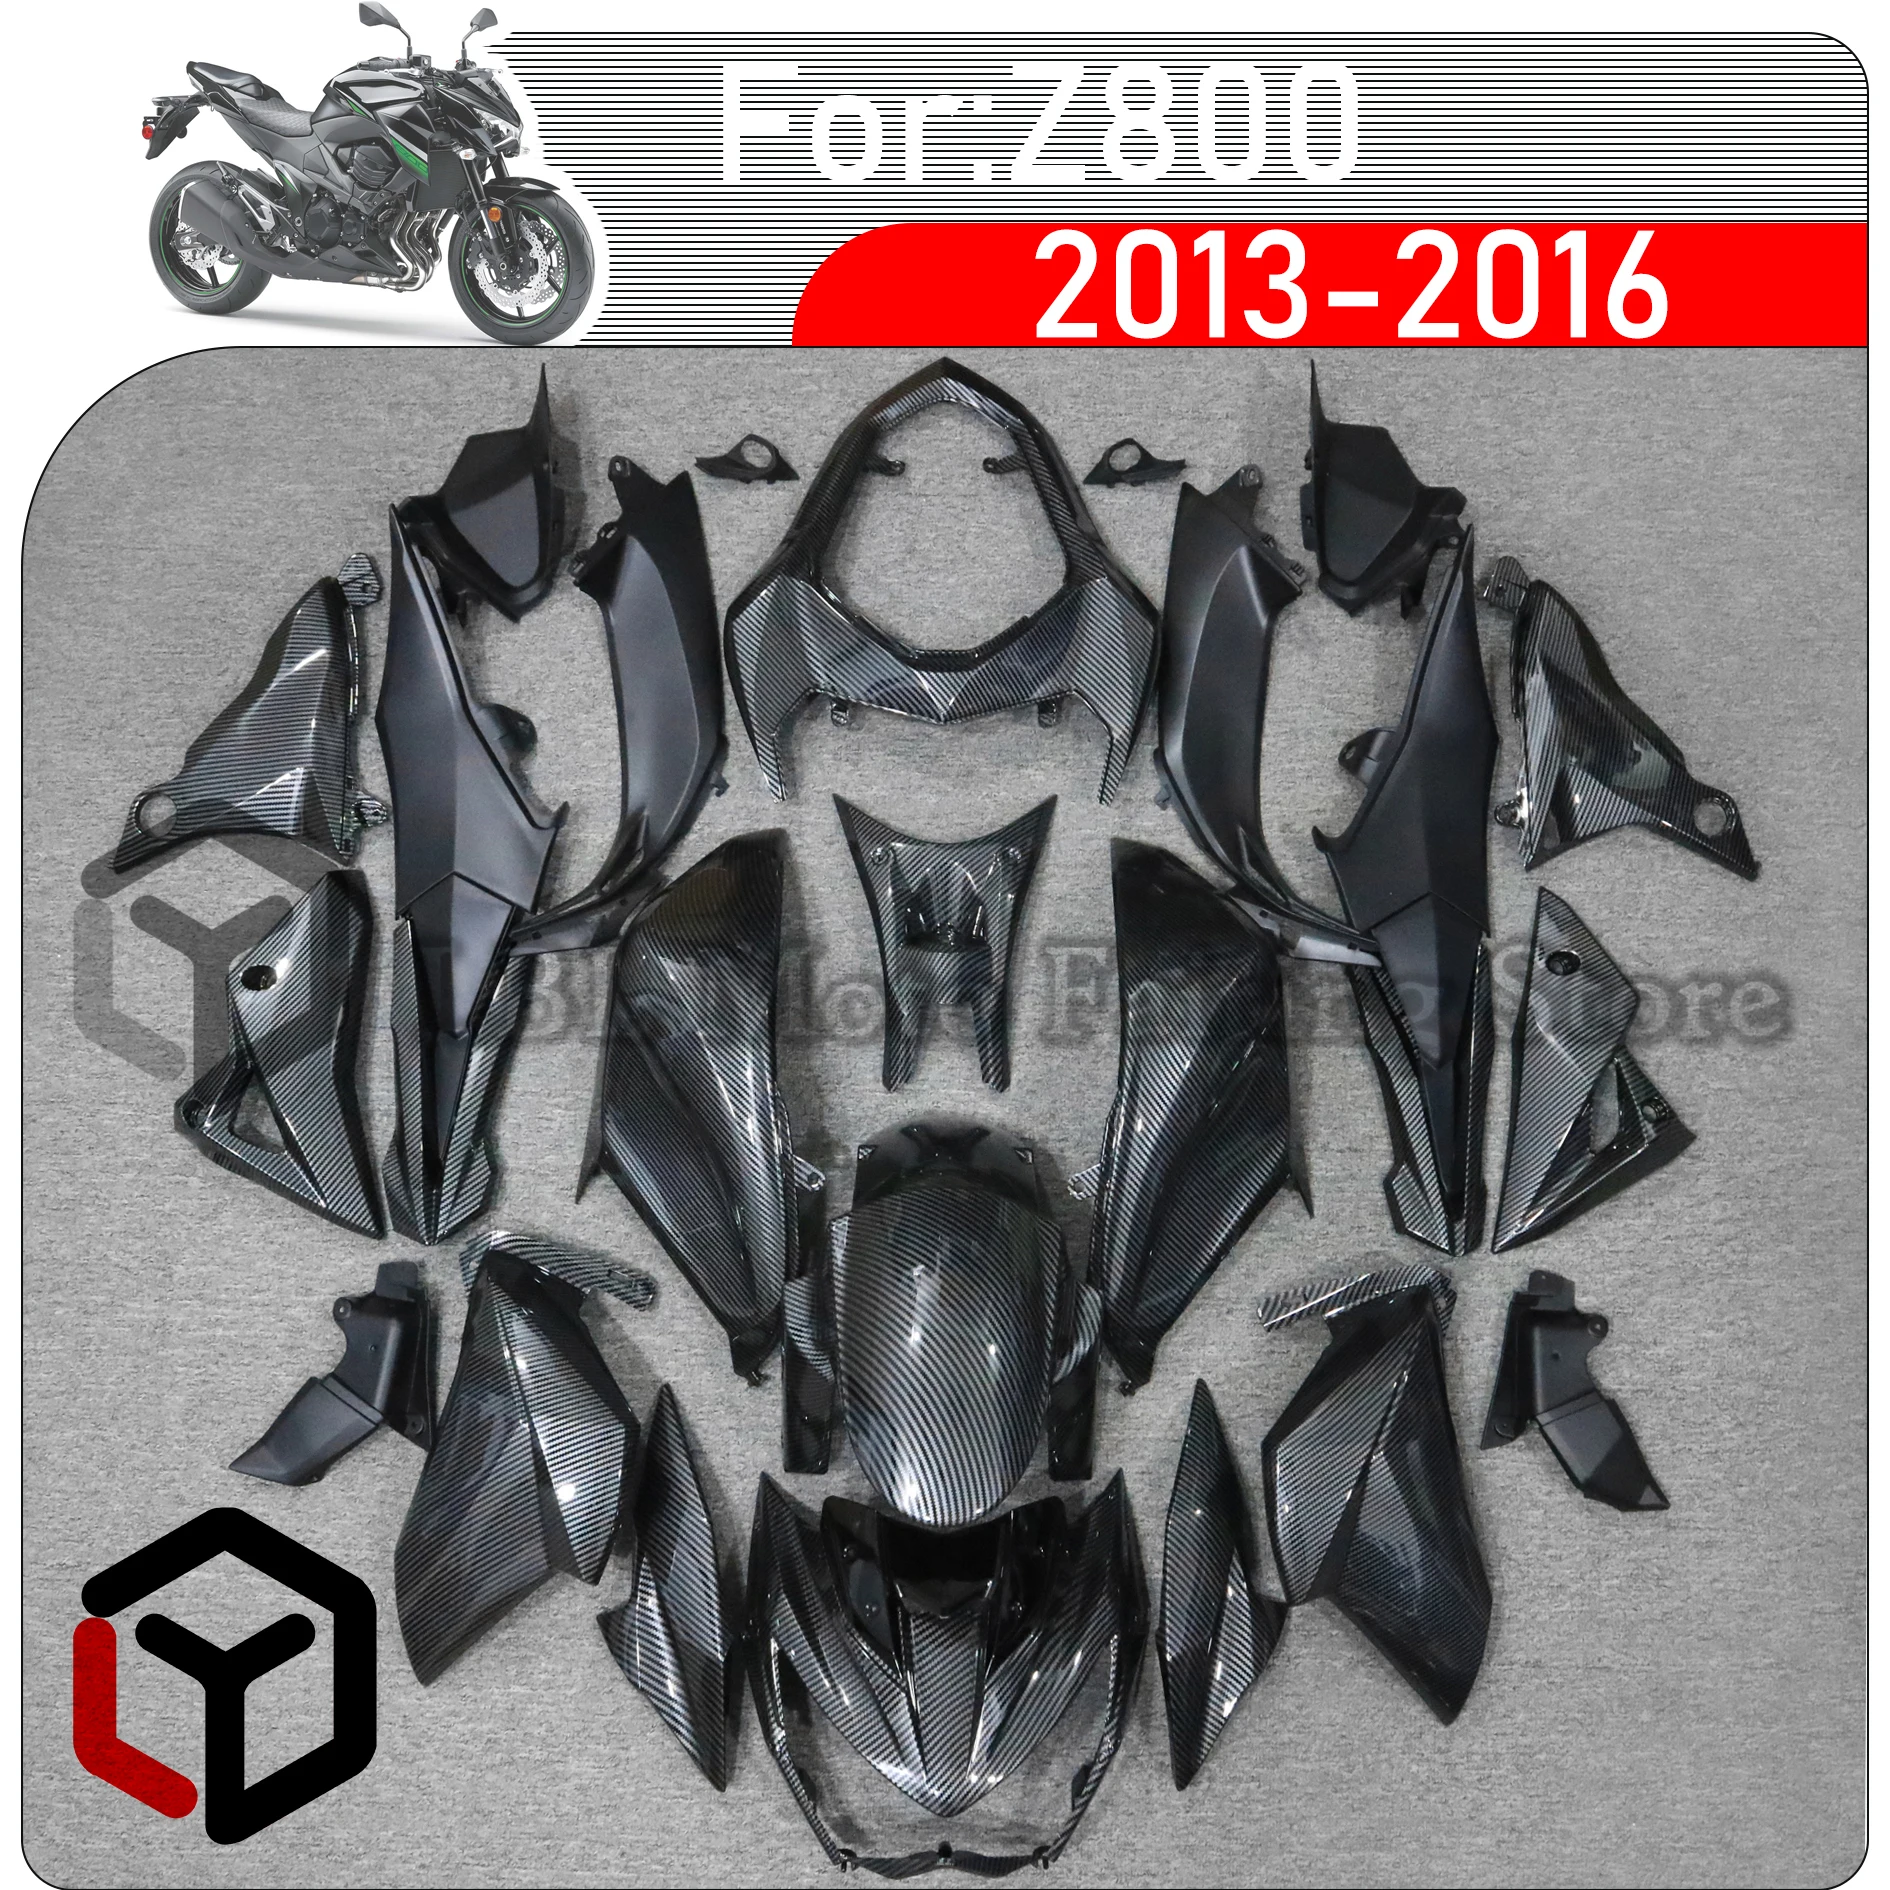 

Комплект обтекателей для мотоцикла, подходит для KAWASAKI Z800 Z 800 2013 2014 2015 2016, комплект кузова из высококачественного АБС-пластика, полная обтекатель